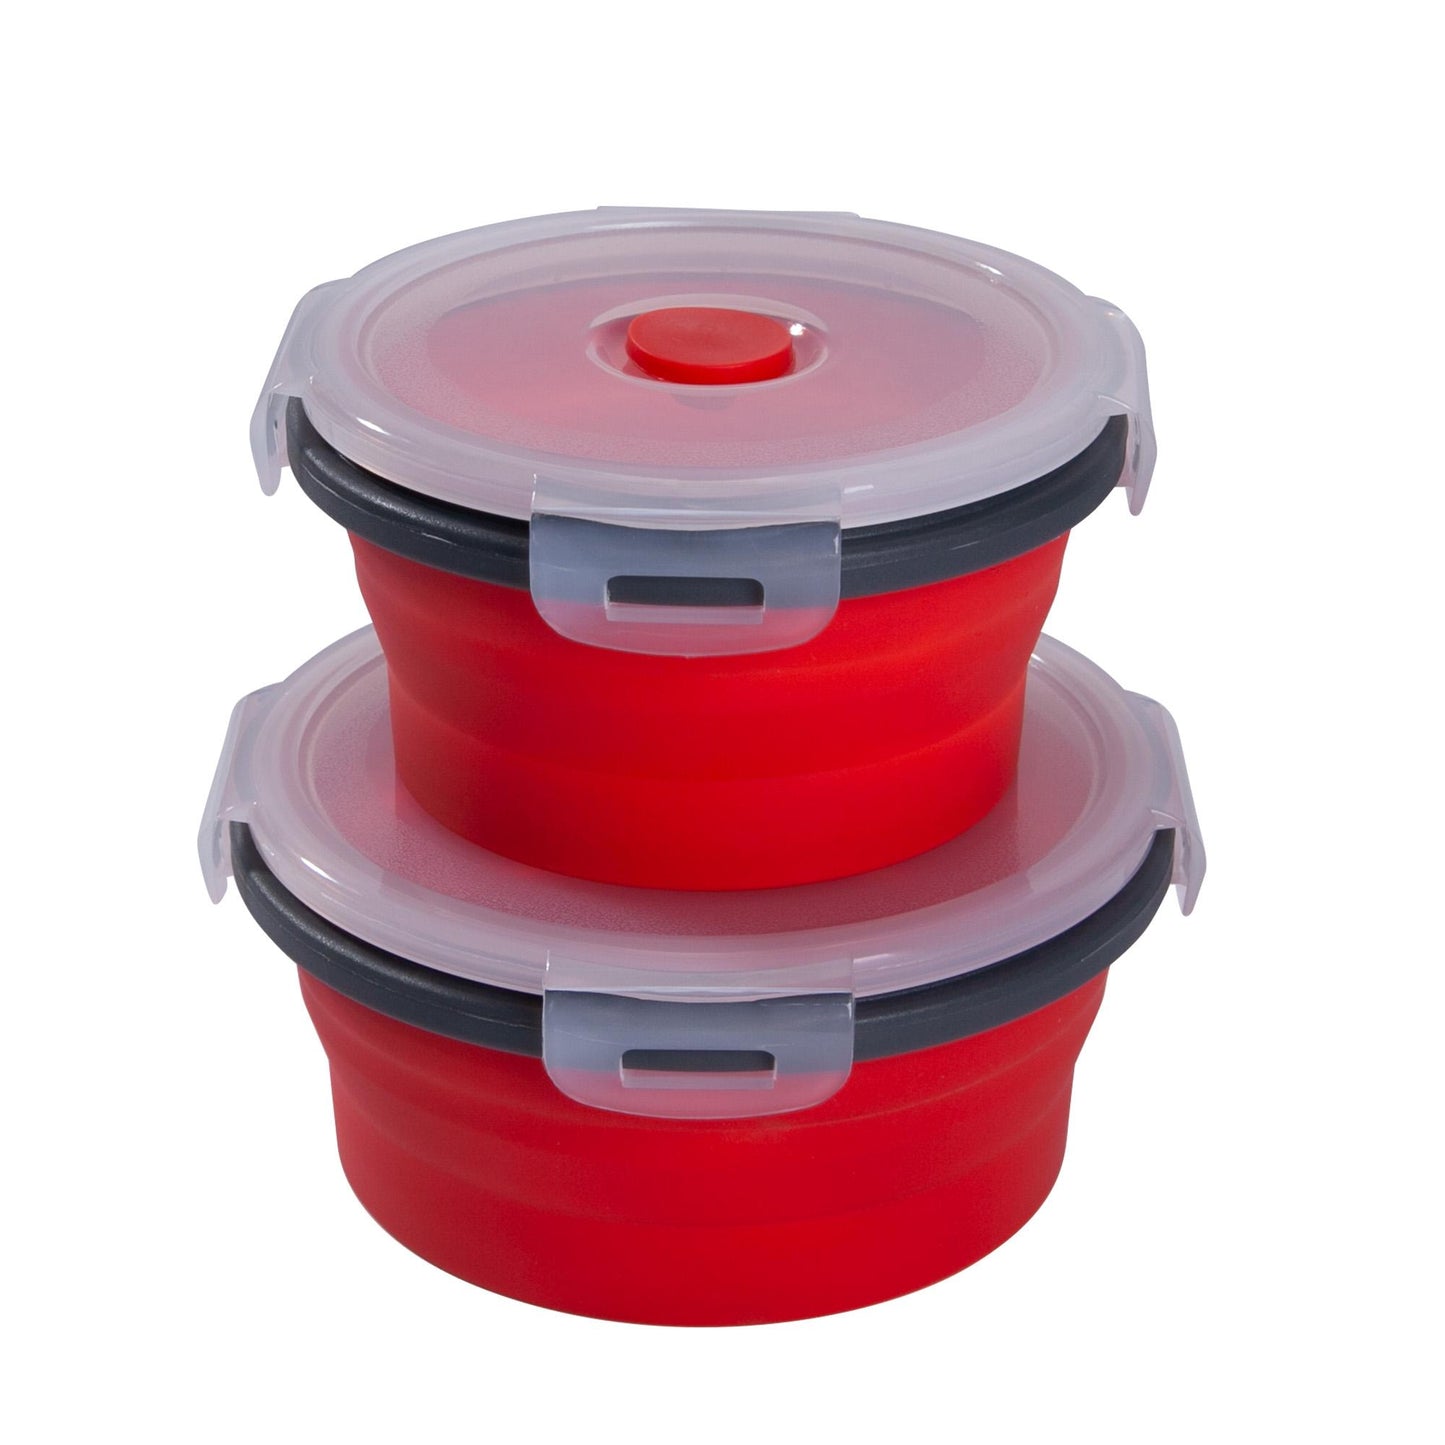 mixcover faltbare Frischhaltedosen Set mit Deckel aus Silikon Bentobox Brotdose Lunchbox Picknick Camping Schüssel BPA-frei platzsparend 250 ml 500 ml rot